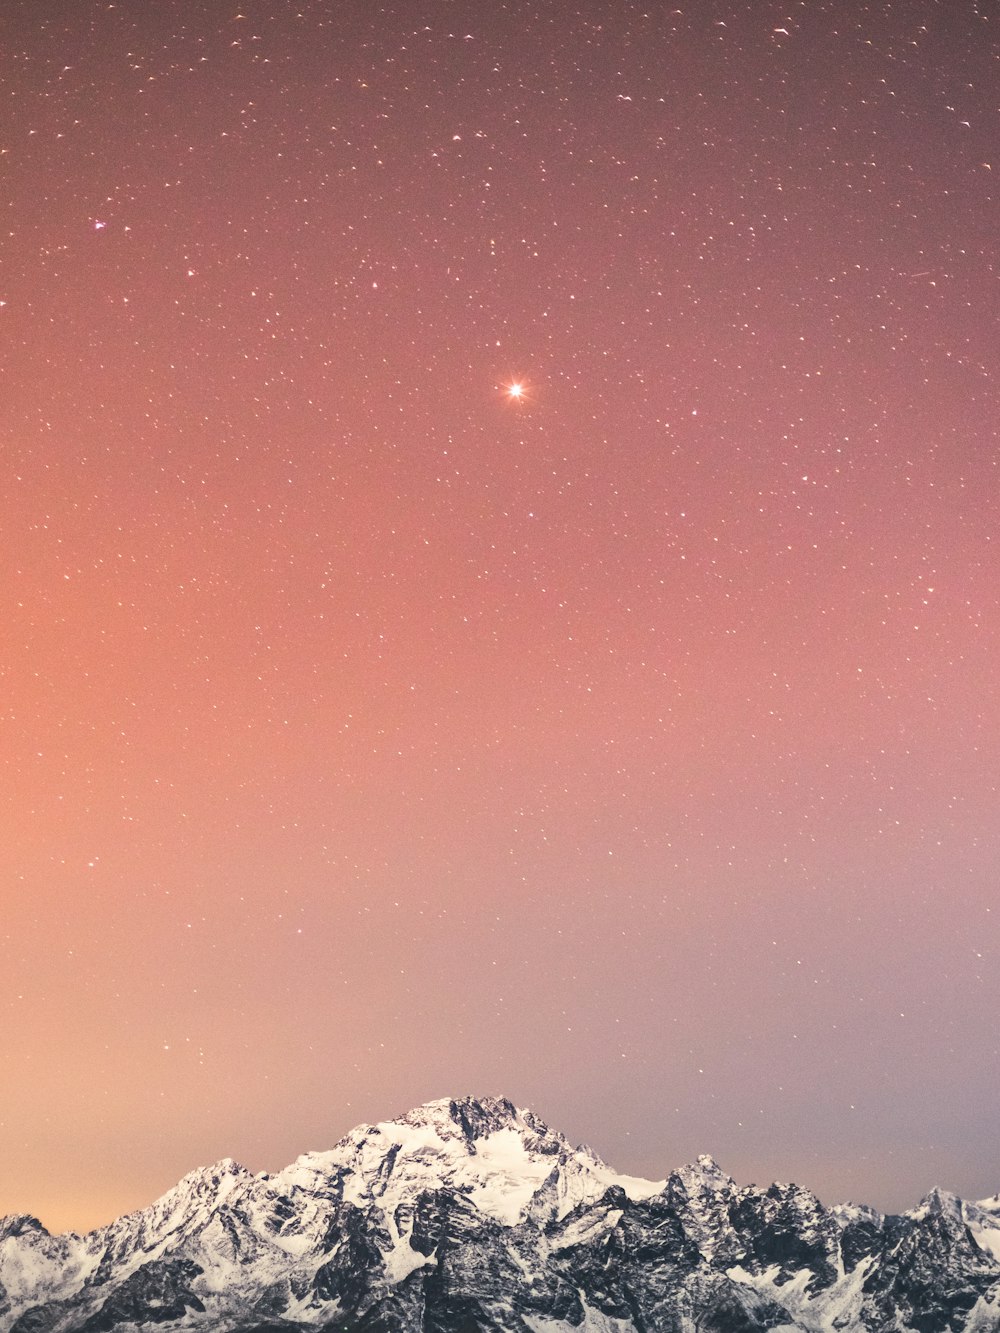 Montaña cubierta de nieve bajo el cielo azul con estrellas durante la noche